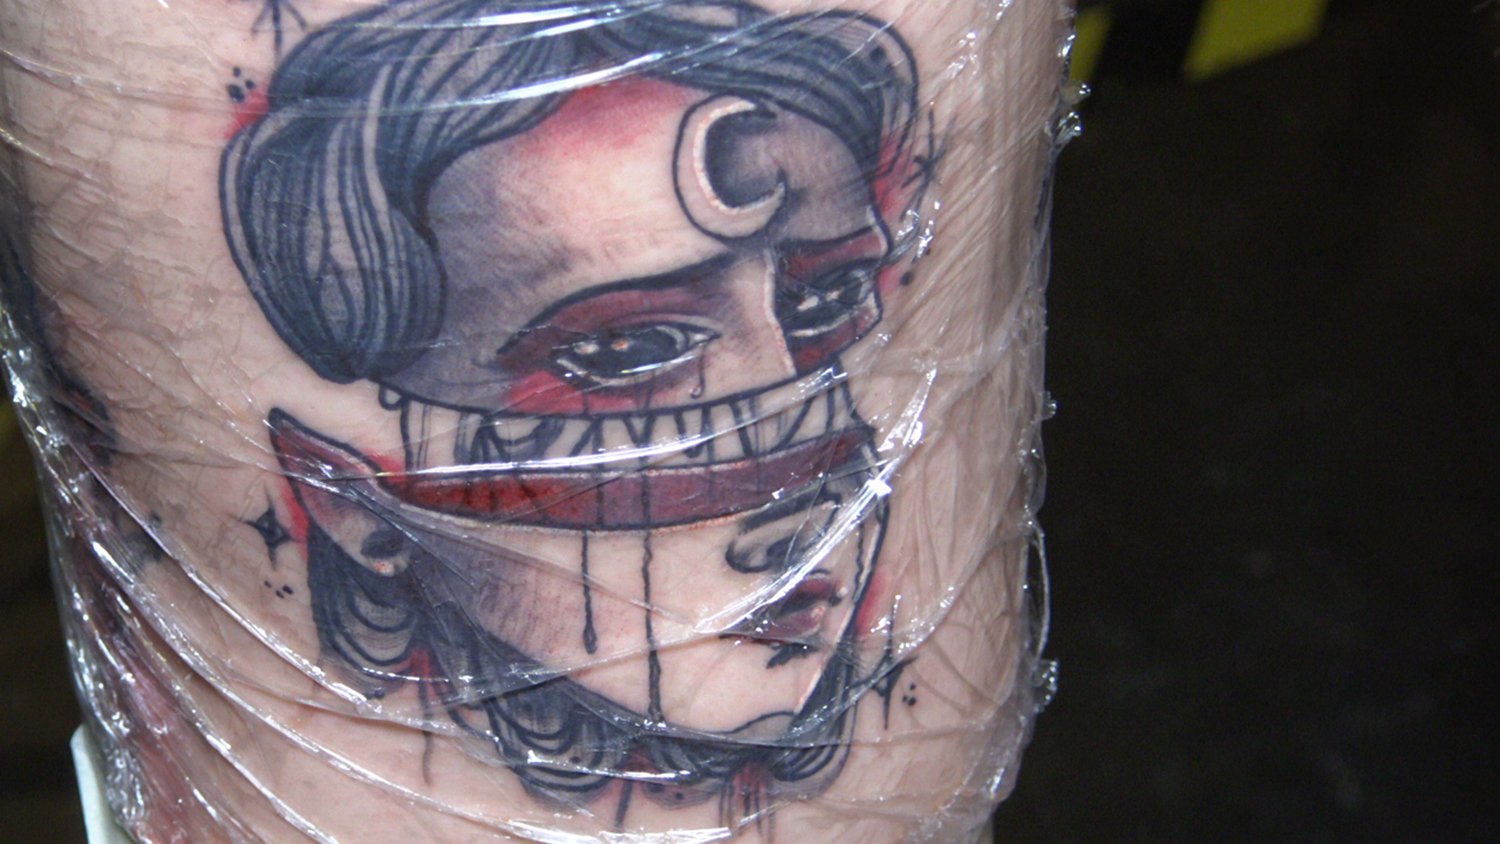 snip art tattoo, cut head girl